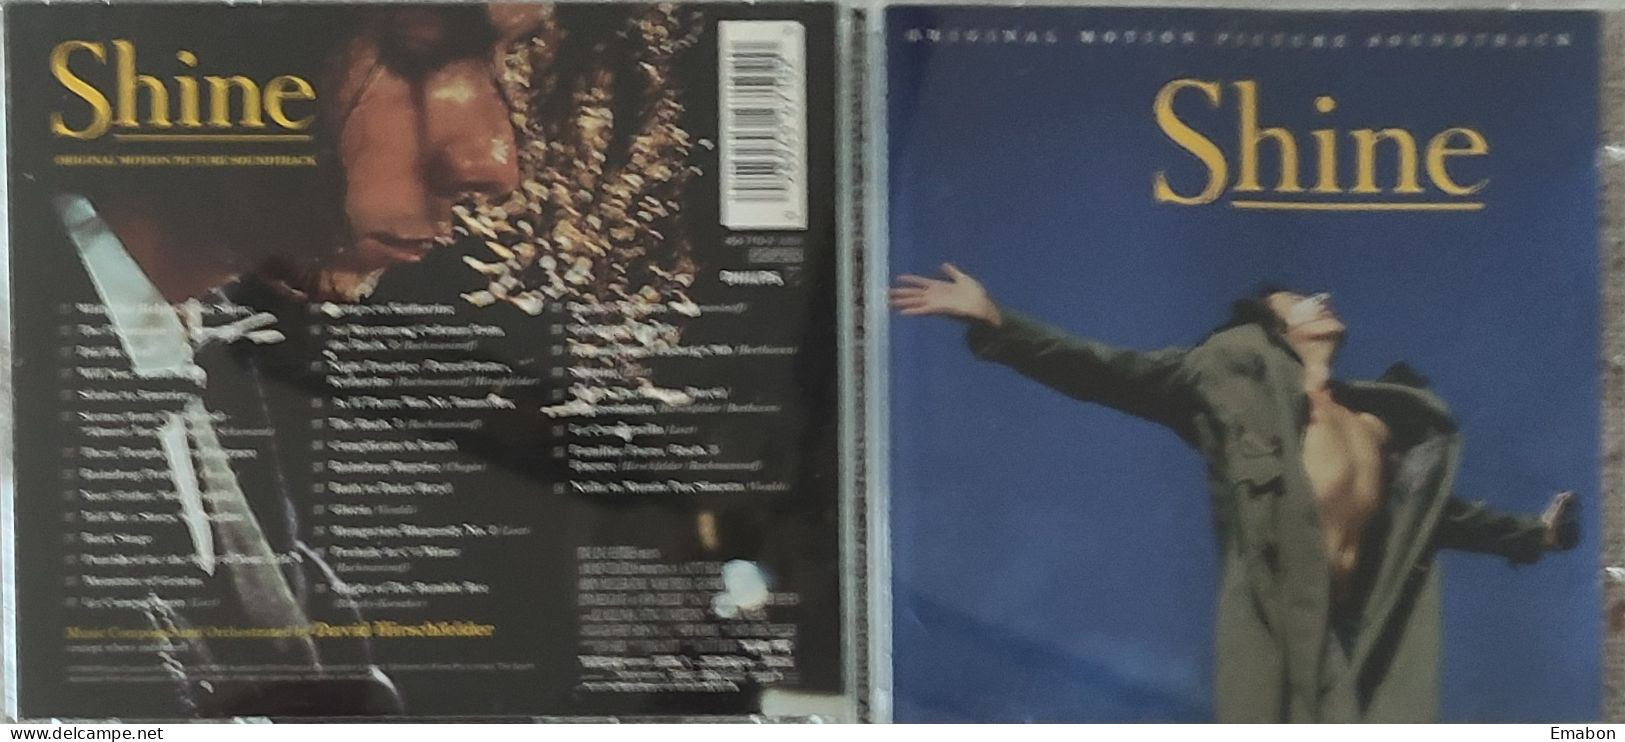 BORGATTA - FILM MUSIC  - Cd  DAVID HIRSCHFELDER - SHINE - PHILIPS 1996 - USATO In Buono Stato - Musica Di Film